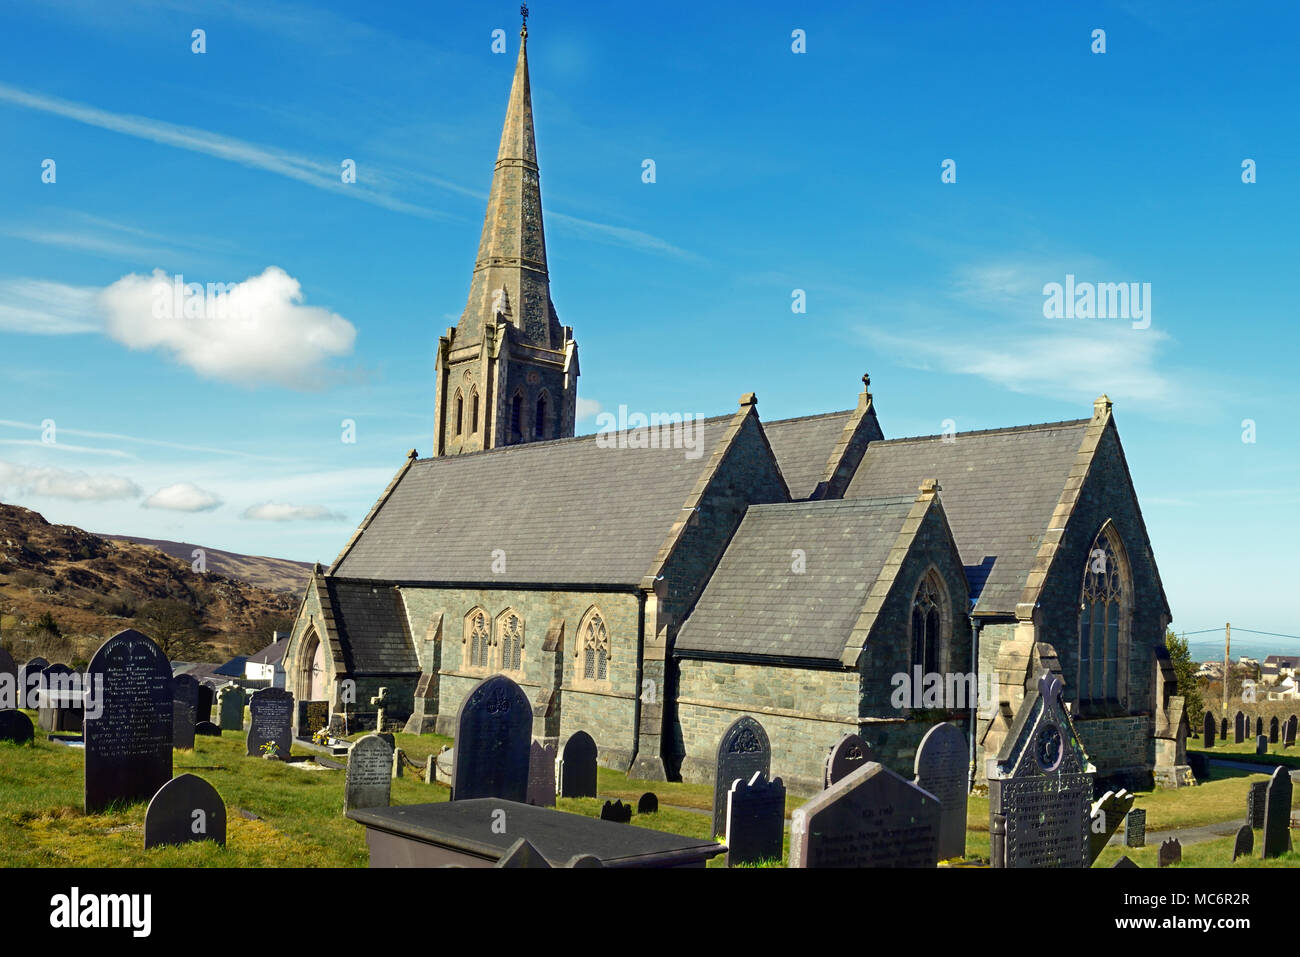 La Chiesa di Cristo si trova nel villaggio di Deiniolen nel Galles del Nord. È stato costruito nel 1857 per la Chiesa anglicana cavatori ed è ora un edificio classificato Grade II. Foto Stock